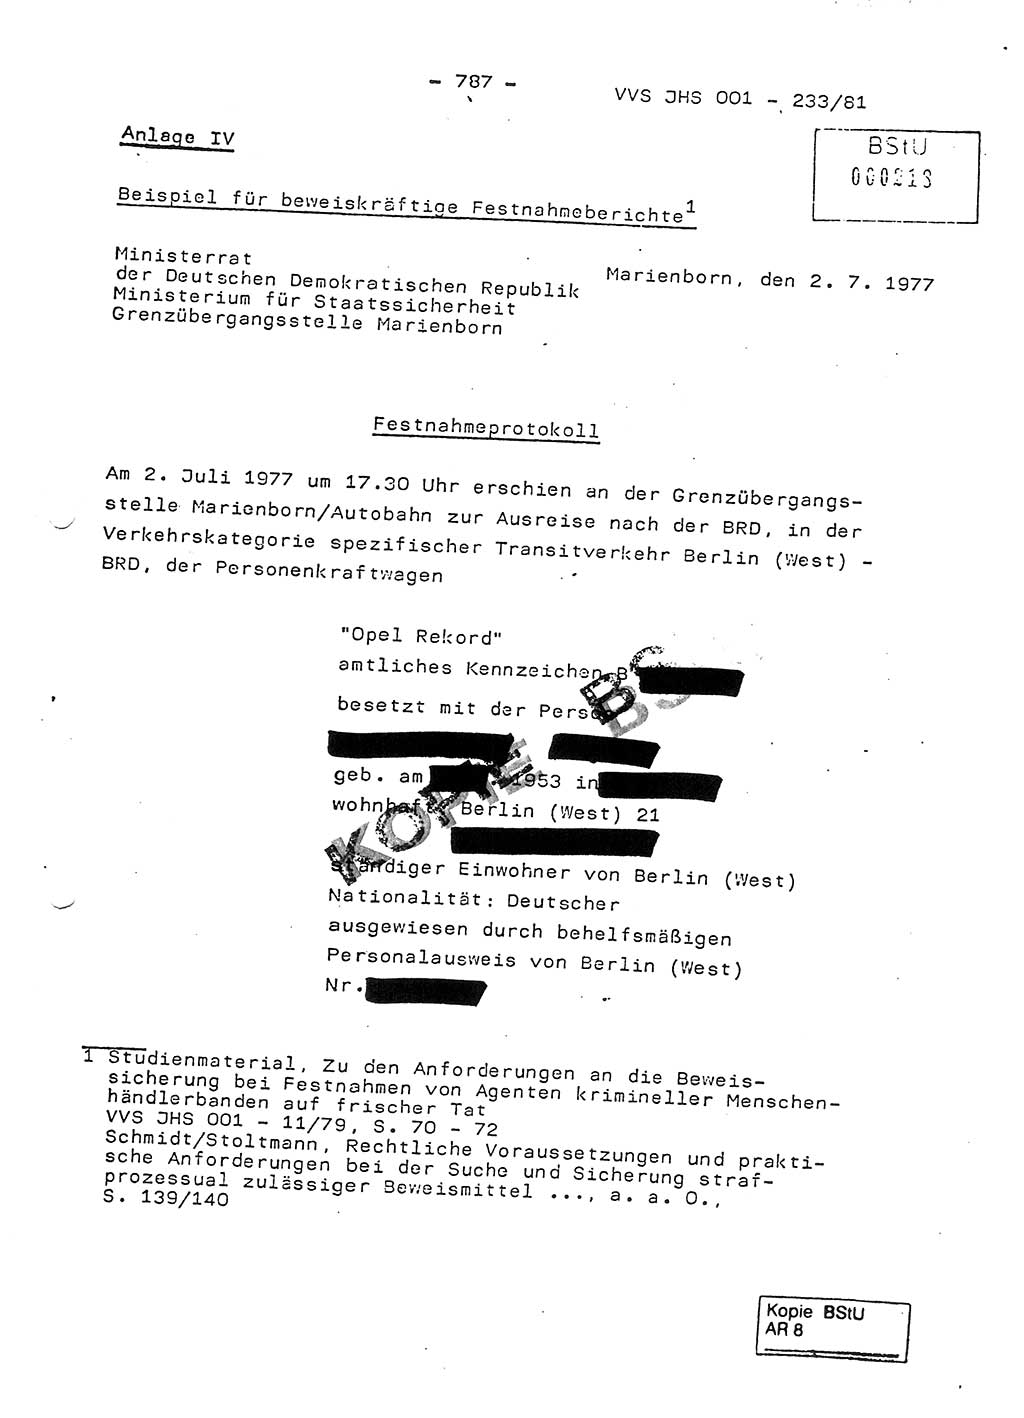 Dissertation Oberstleutnant Horst Zank (JHS), Oberstleutnant Dr. Karl-Heinz Knoblauch (JHS), Oberstleutnant Gustav-Adolf Kowalewski (HA Ⅸ), Oberstleutnant Wolfgang Plötner (HA Ⅸ), Ministerium für Staatssicherheit (MfS) [Deutsche Demokratische Republik (DDR)], Juristische Hochschule (JHS), Vertrauliche Verschlußsache (VVS) o001-233/81, Potsdam 1981, Blatt 787 (Diss. MfS DDR JHS VVS o001-233/81 1981, Bl. 787)